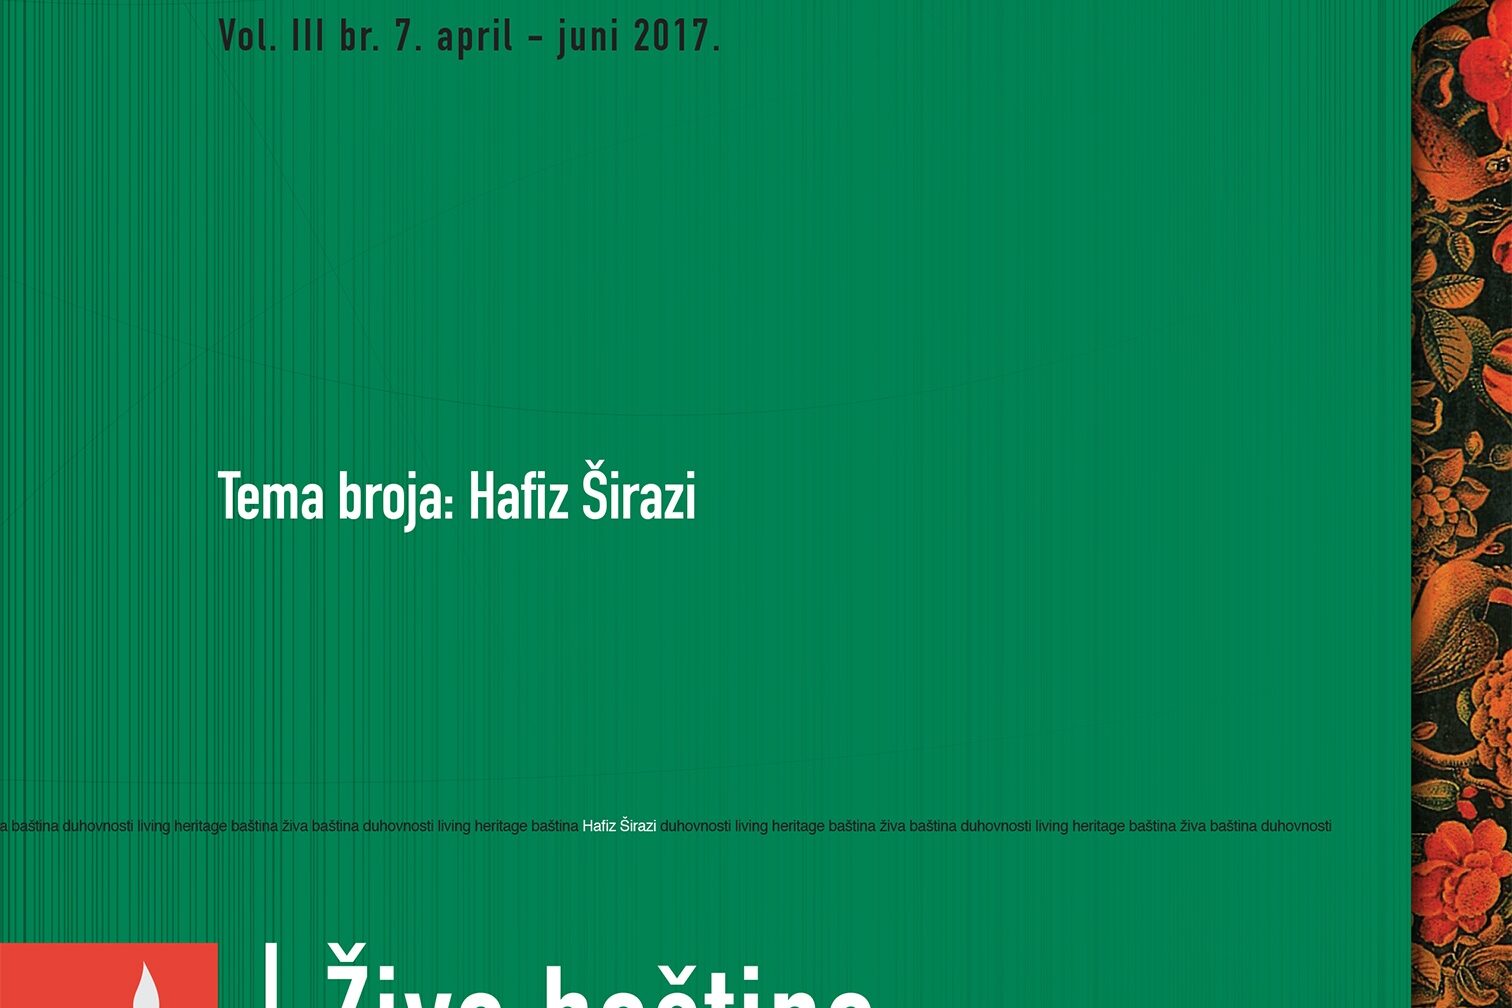 Sufizam kao bunt protiv društvene iskvarenosti ozrcaljene u Hafizu Širaziju